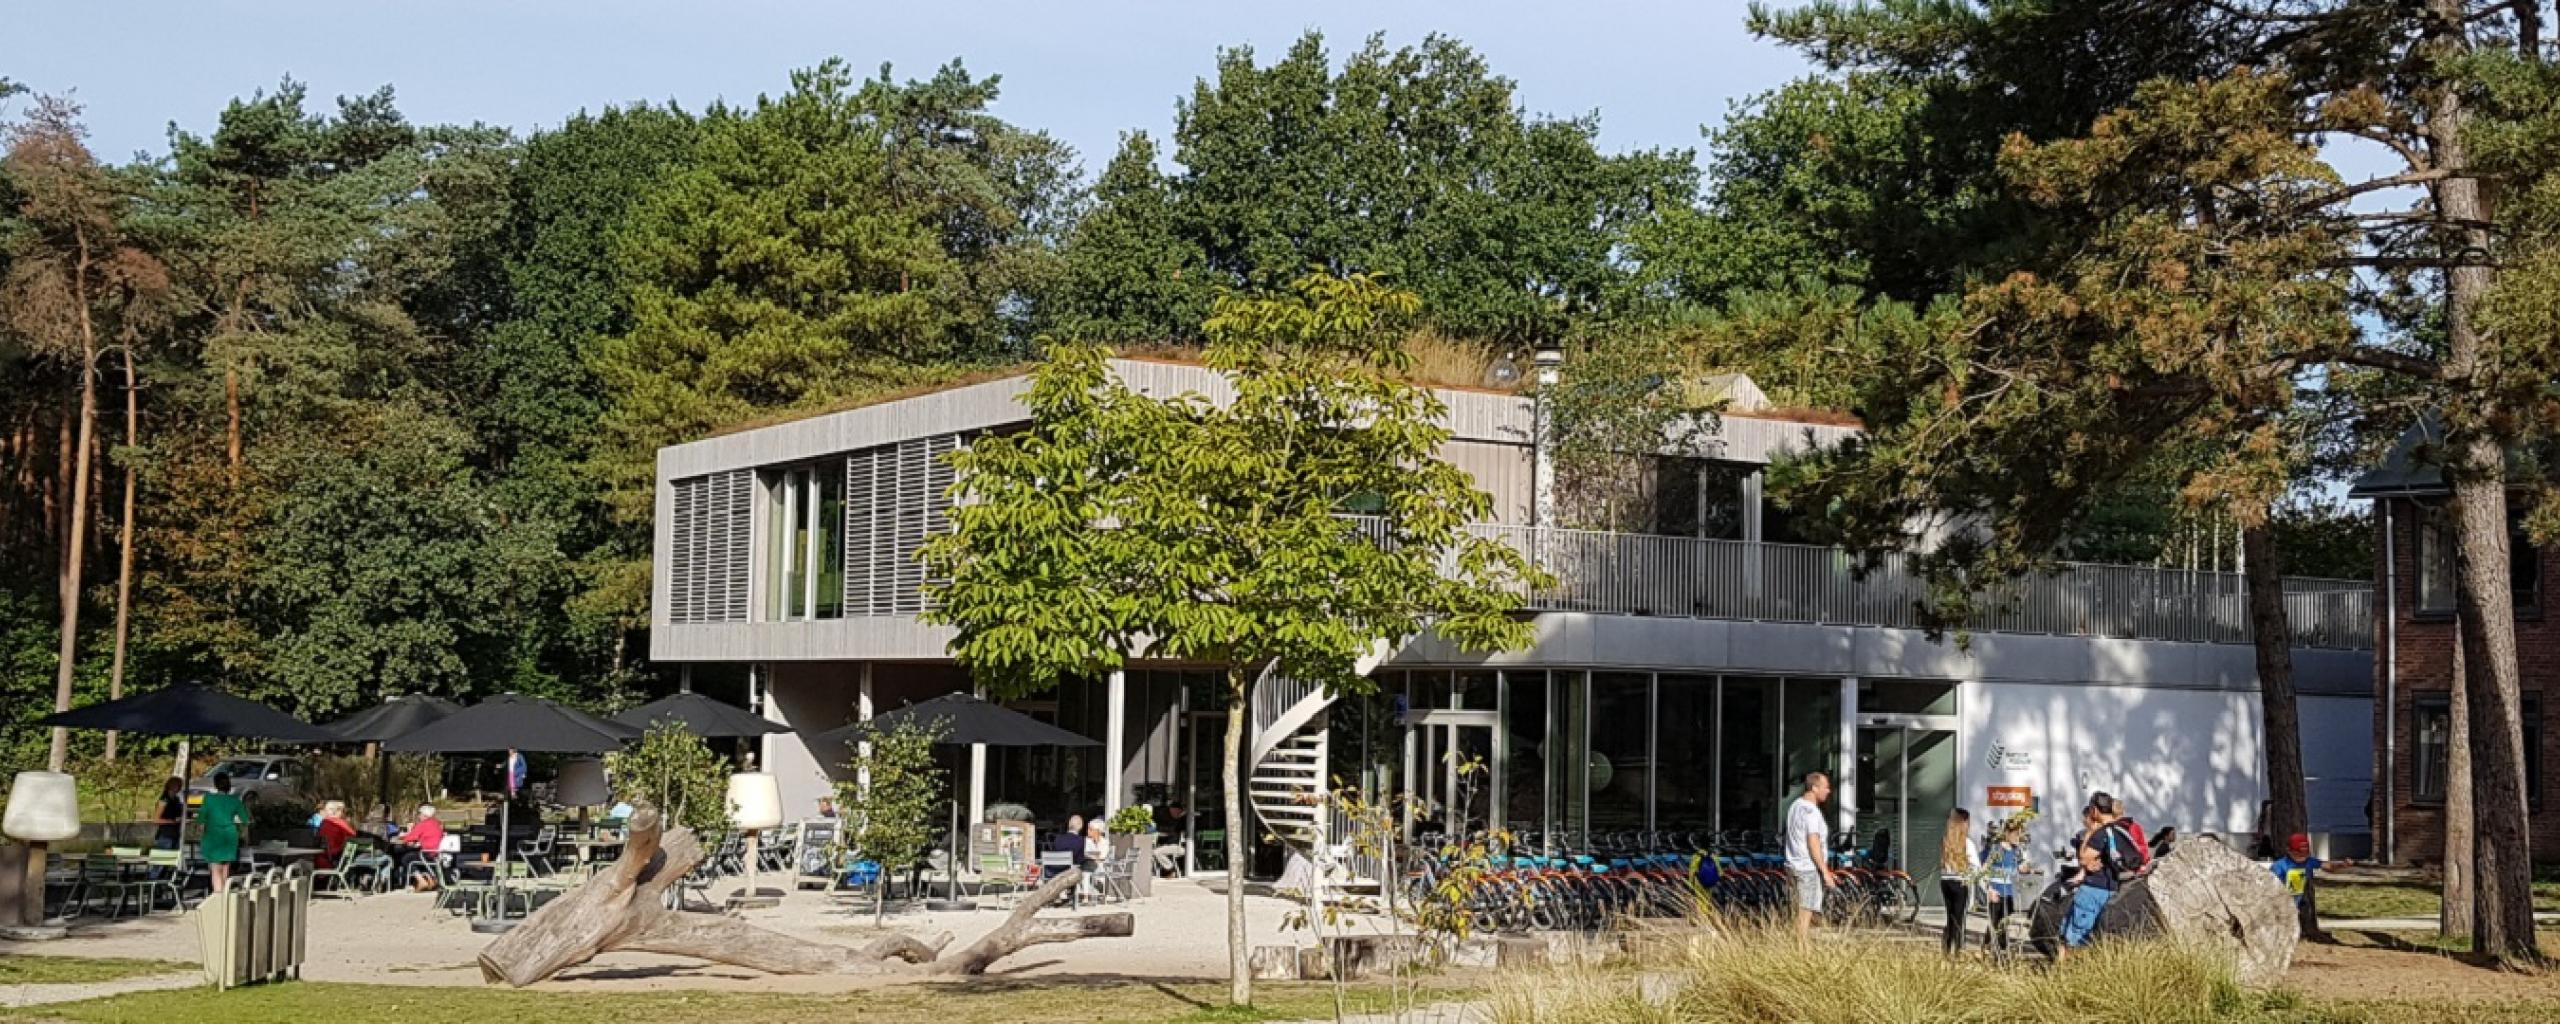 Bezoekerscentrum Natuurpodium Bergen op Zoom